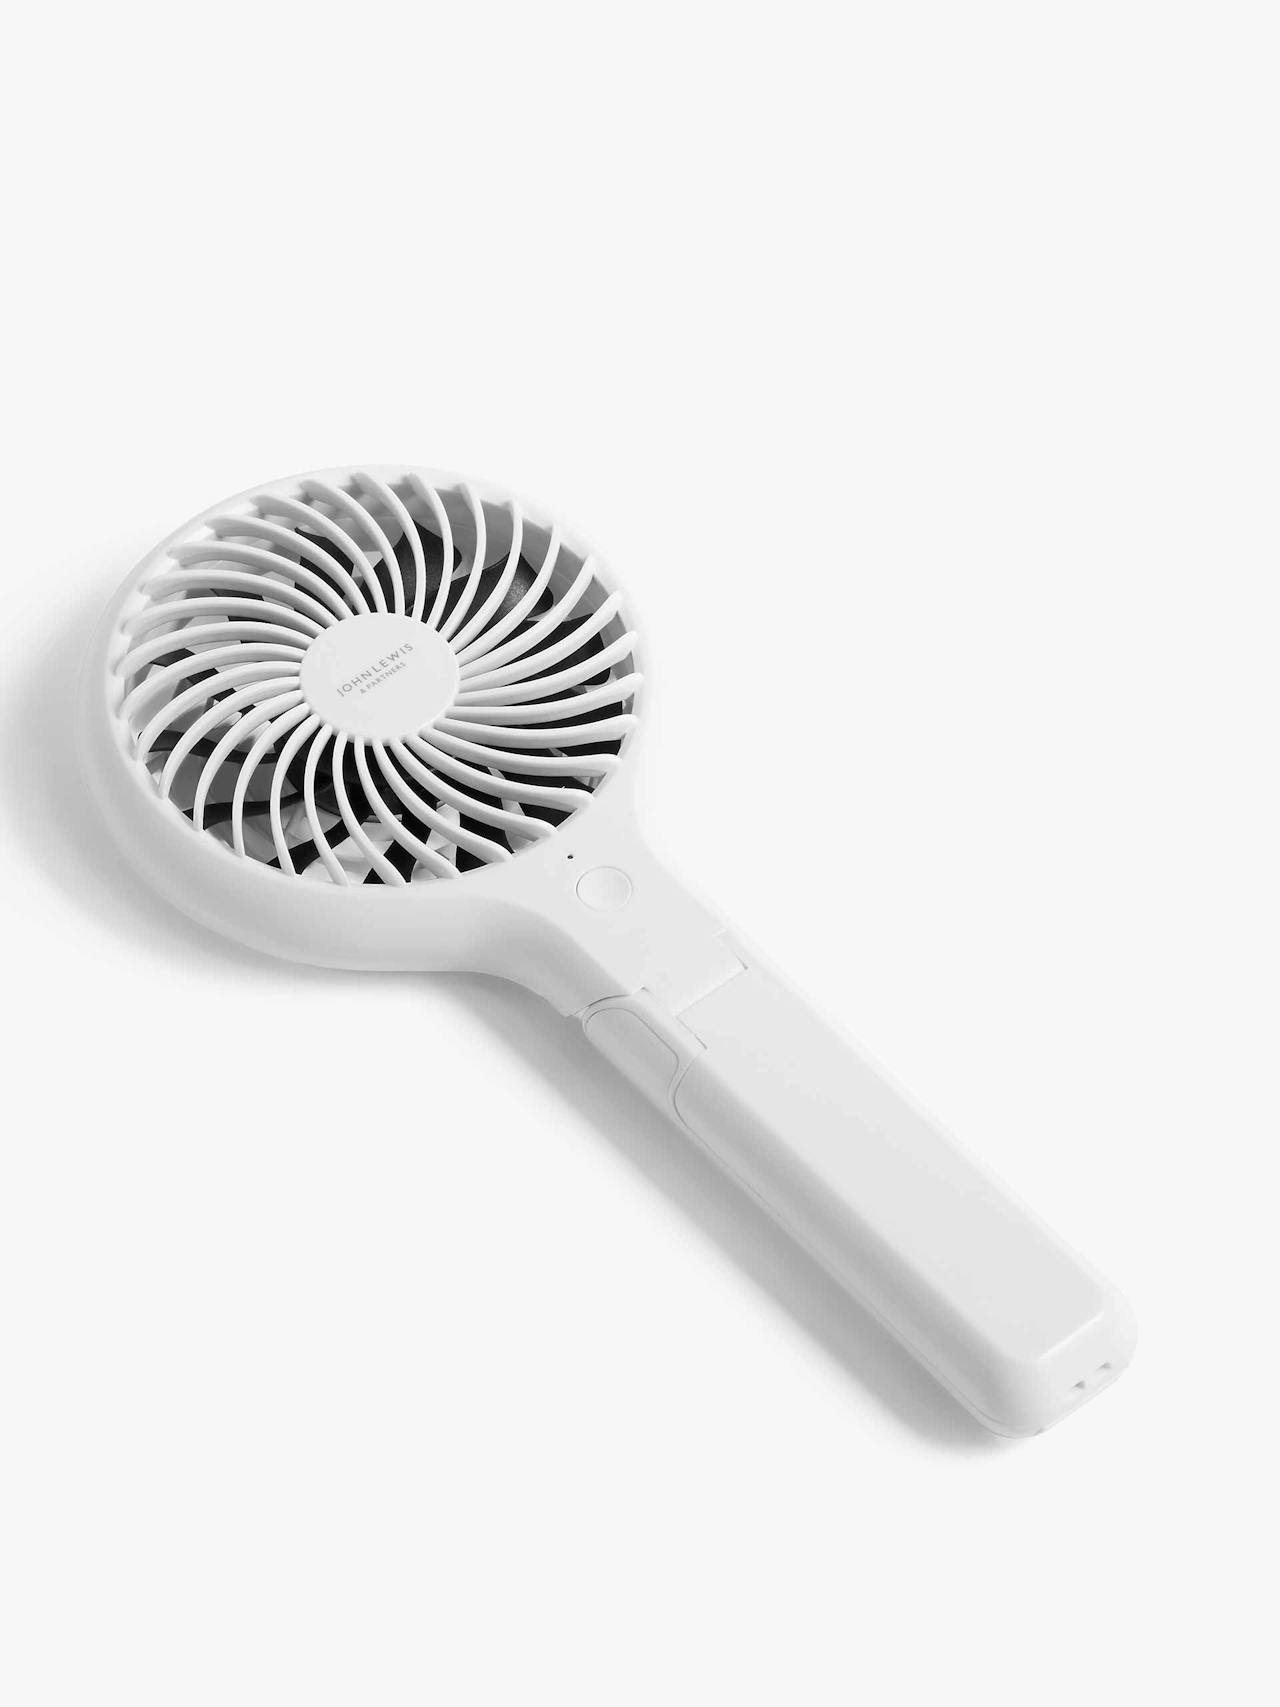 White handheld fan